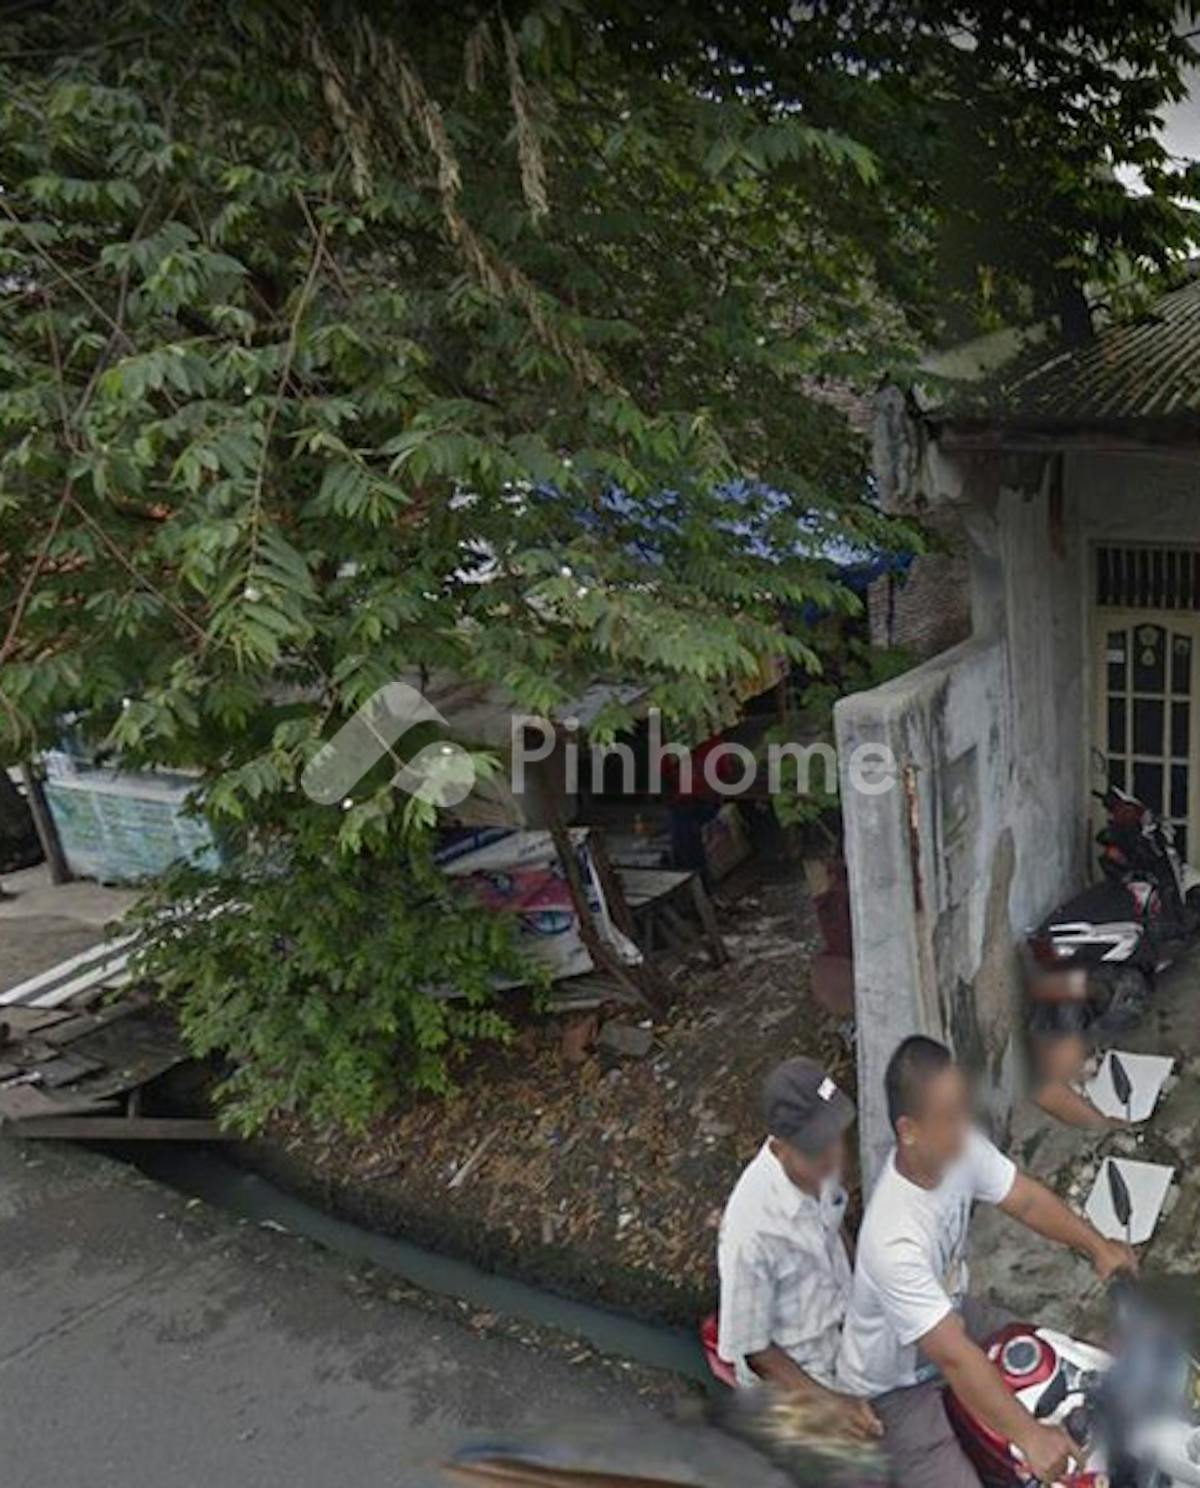 Dijual Tanah Residensial Harga Terbaik di Semanan Kalideres, Jakarta Barat - Gambar 1